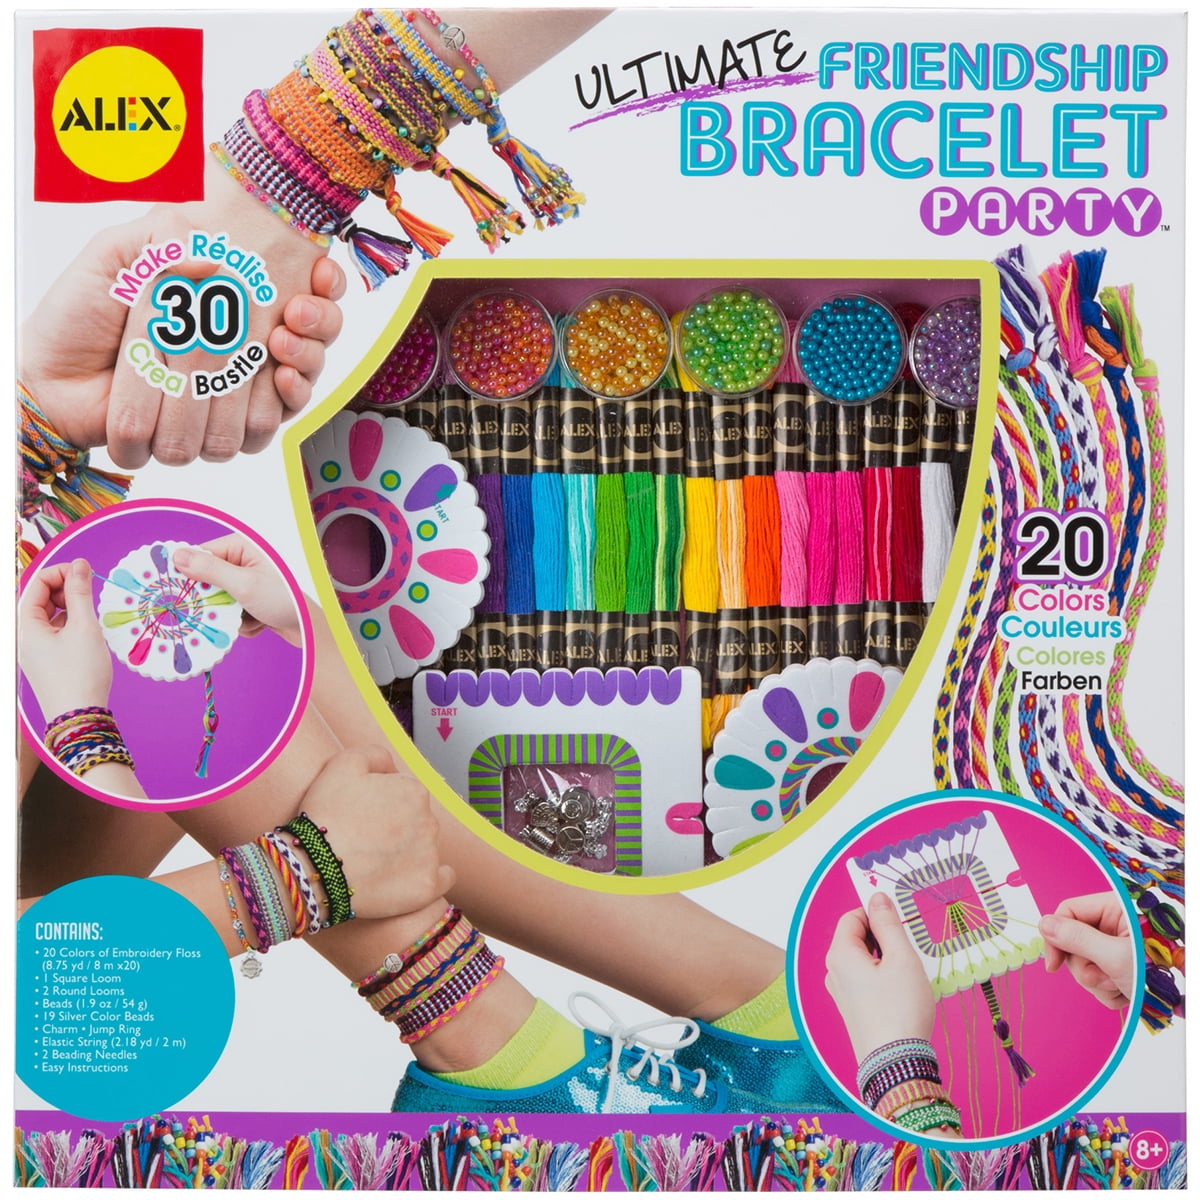 ALEX Toys Ultimate Friendship Bracelet Party Kit 